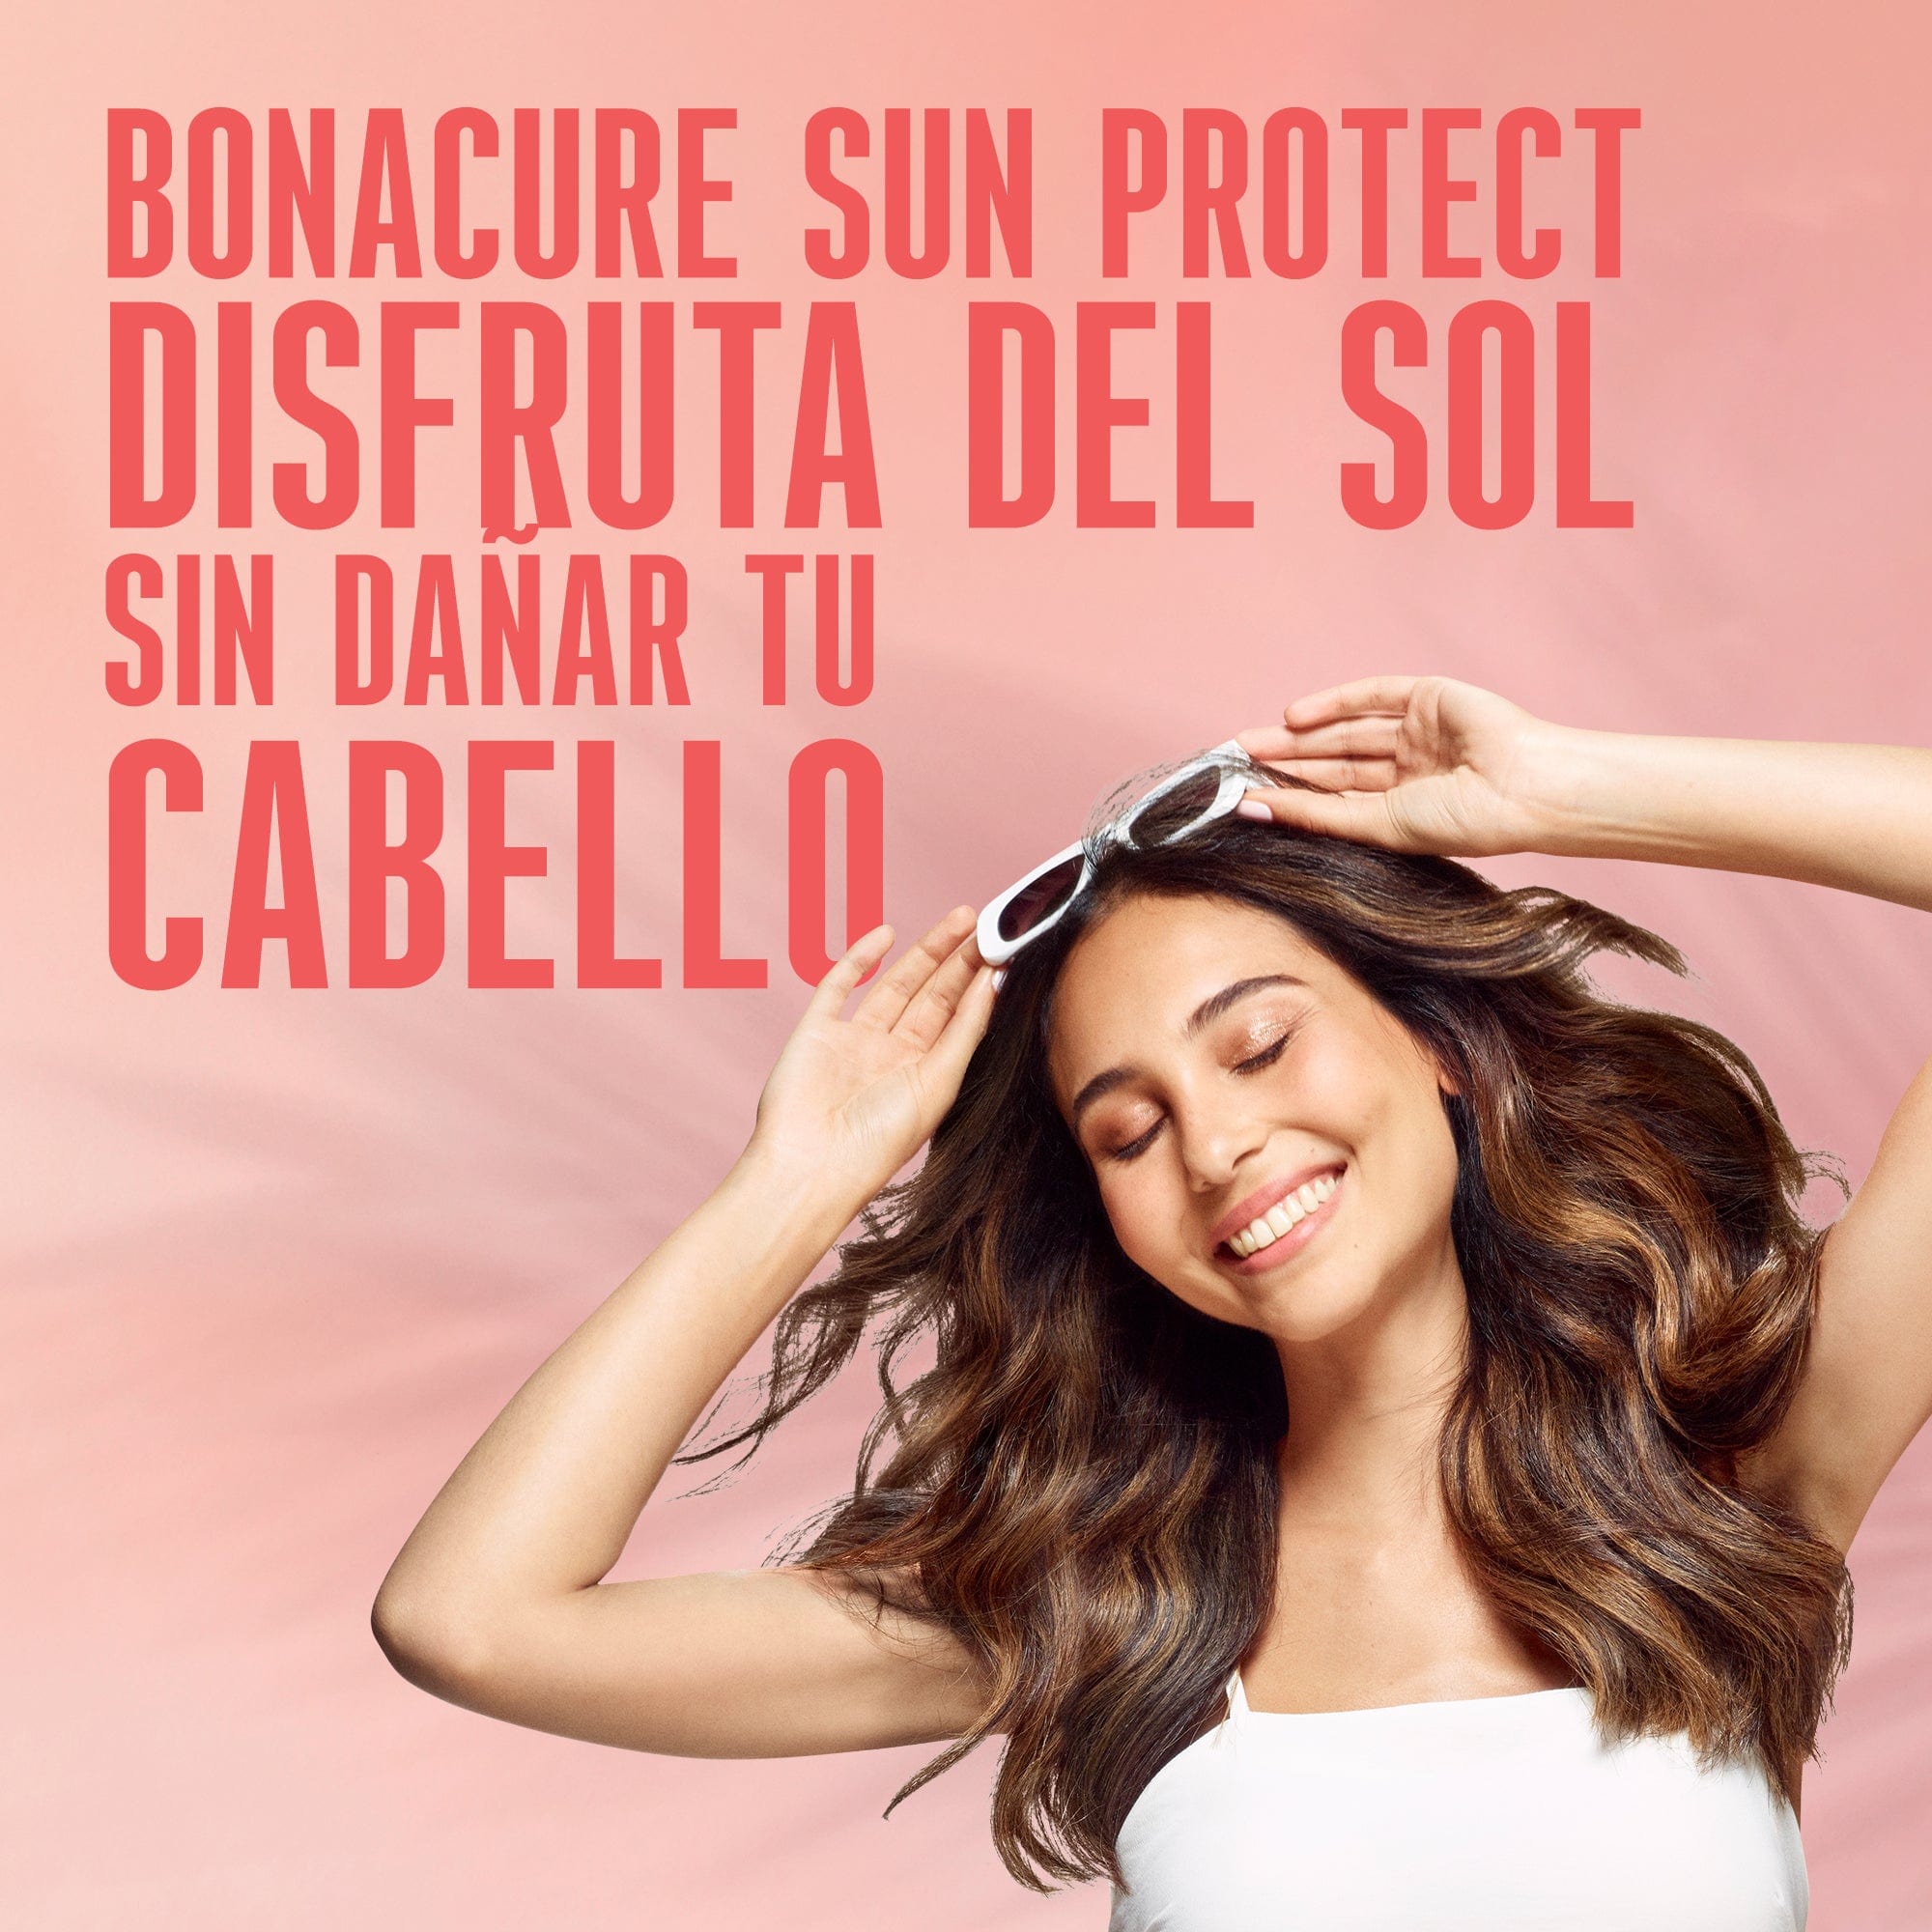 Bonacure Champú Bonacure Sun Protect Fluido de Verano 10en1 100ml Roberta Beauty Club Tienda Online Productos de Peluqueria